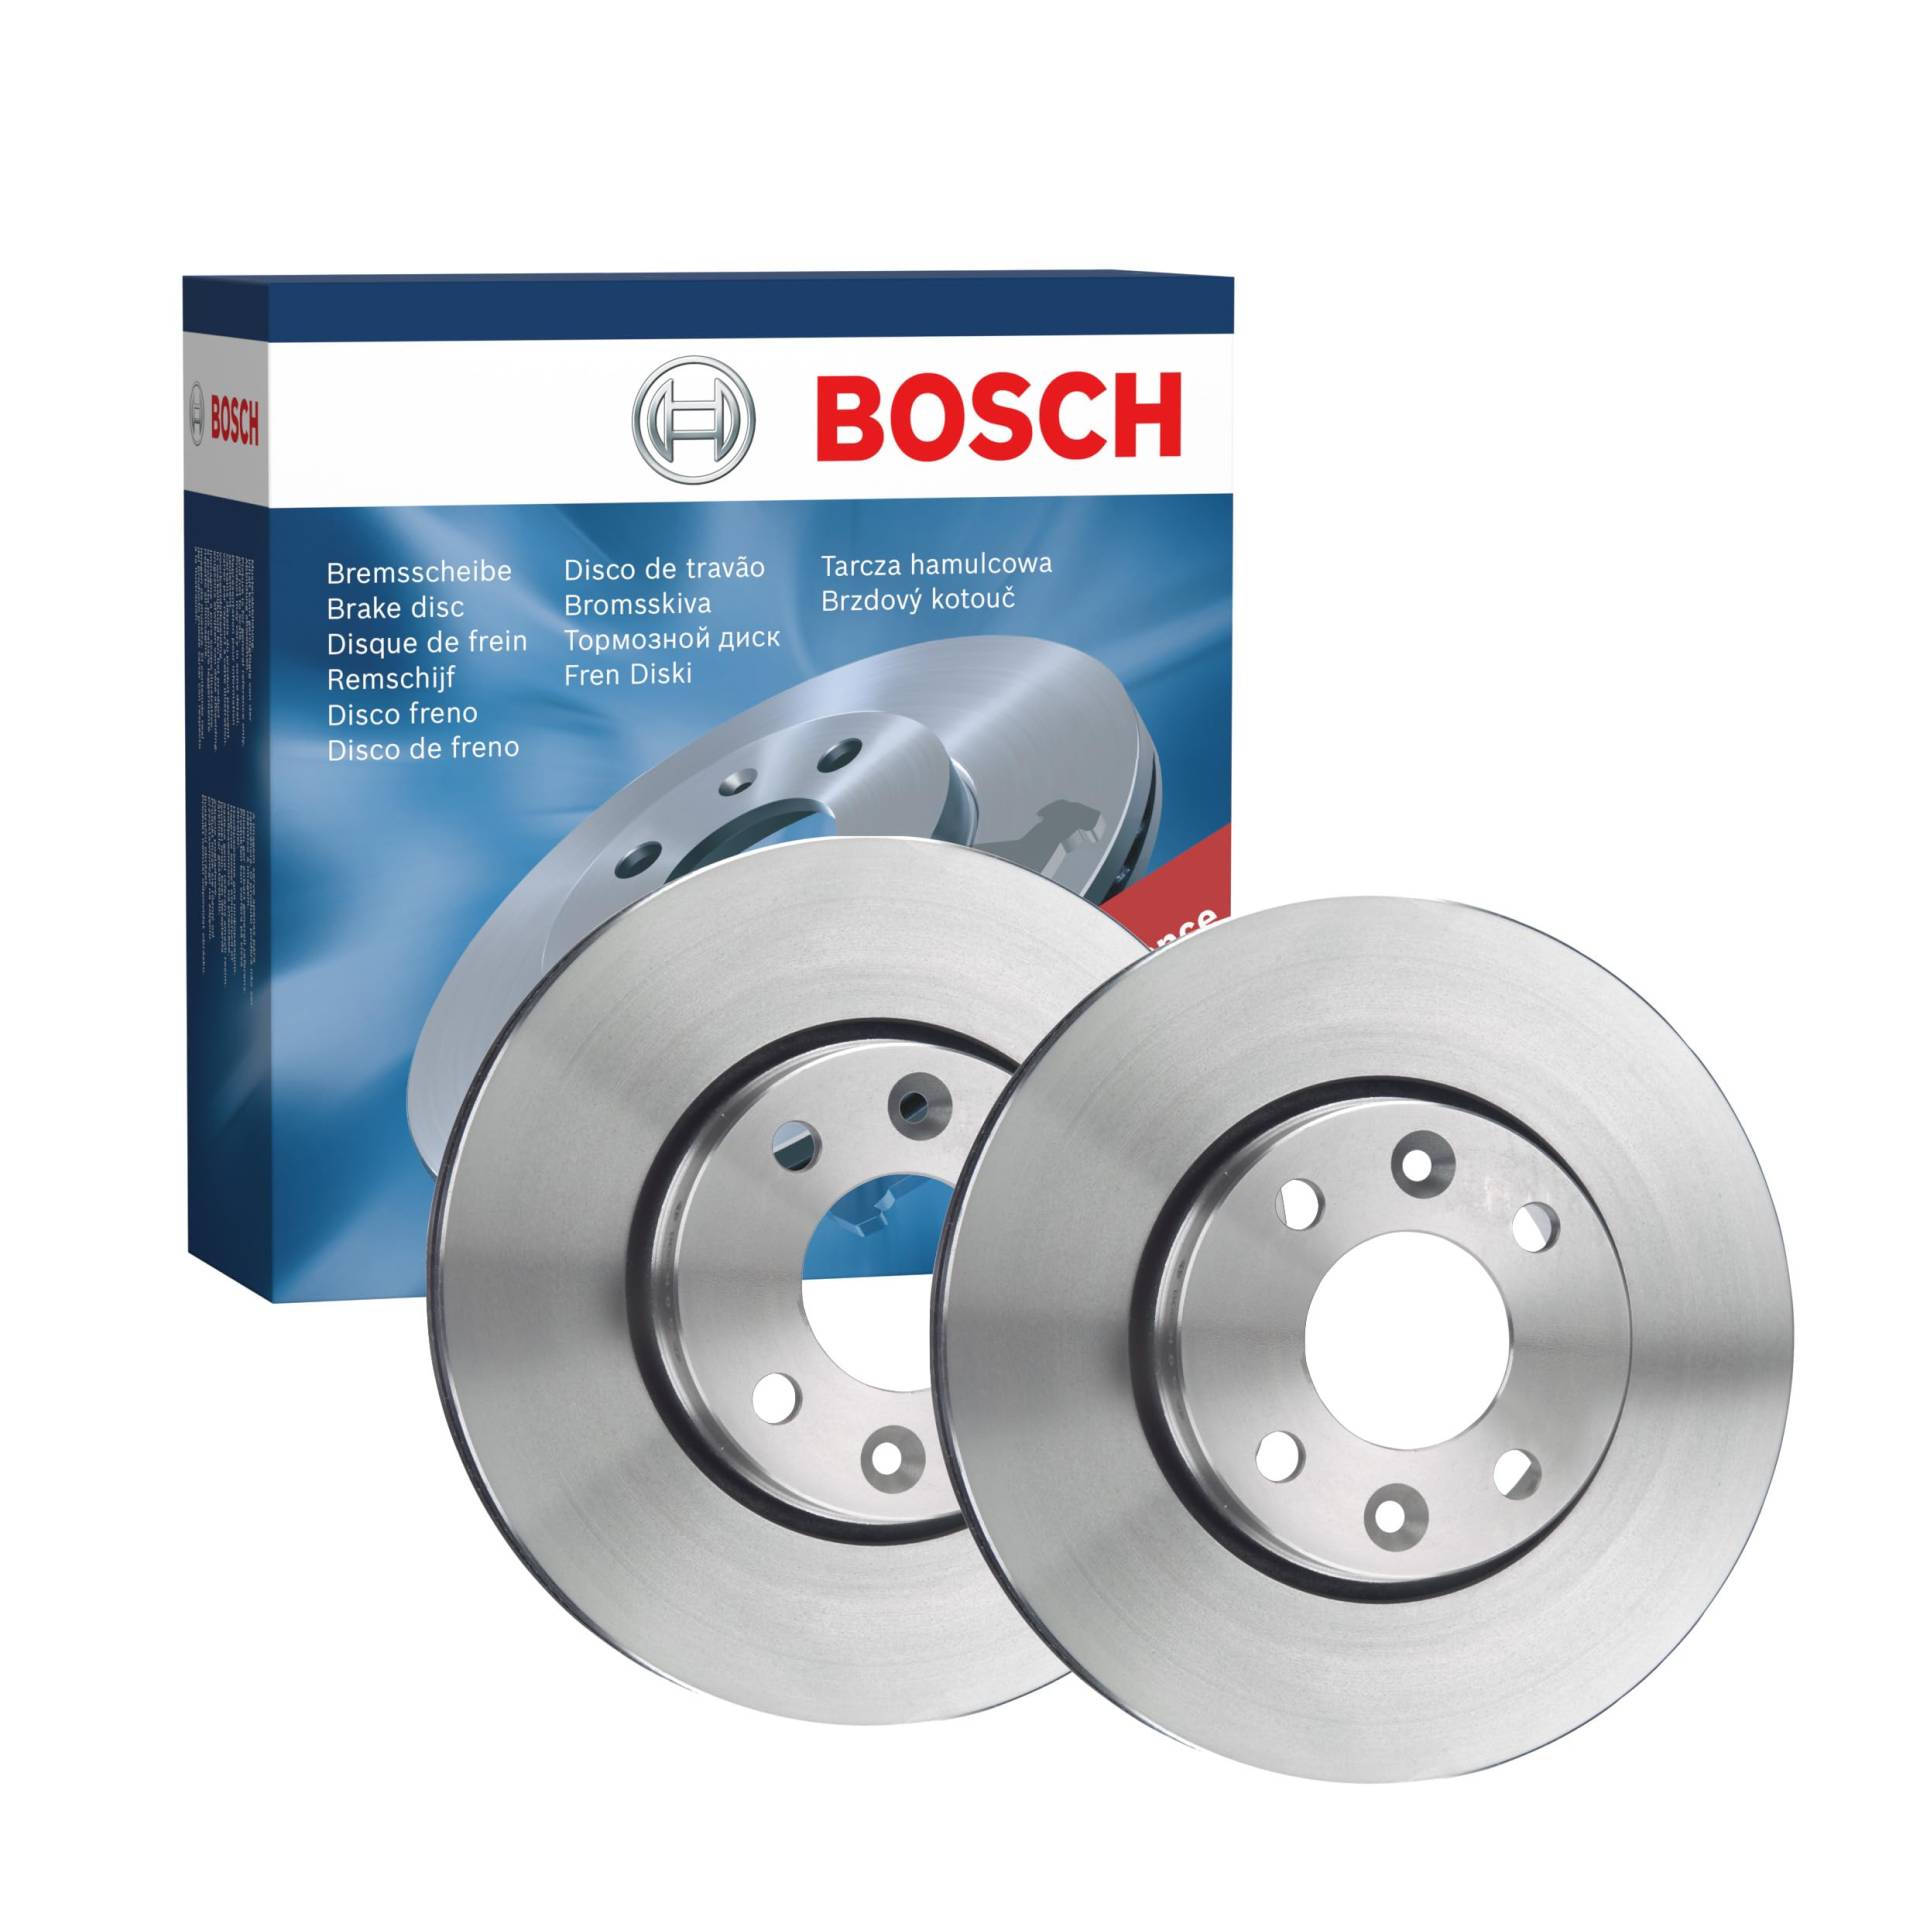 Bosch BD1998 Bremsscheiben - Vorderachse - ECE-R90 Zertifizierung - zwei Bremsscheiben pro Set von Bosch Automotive